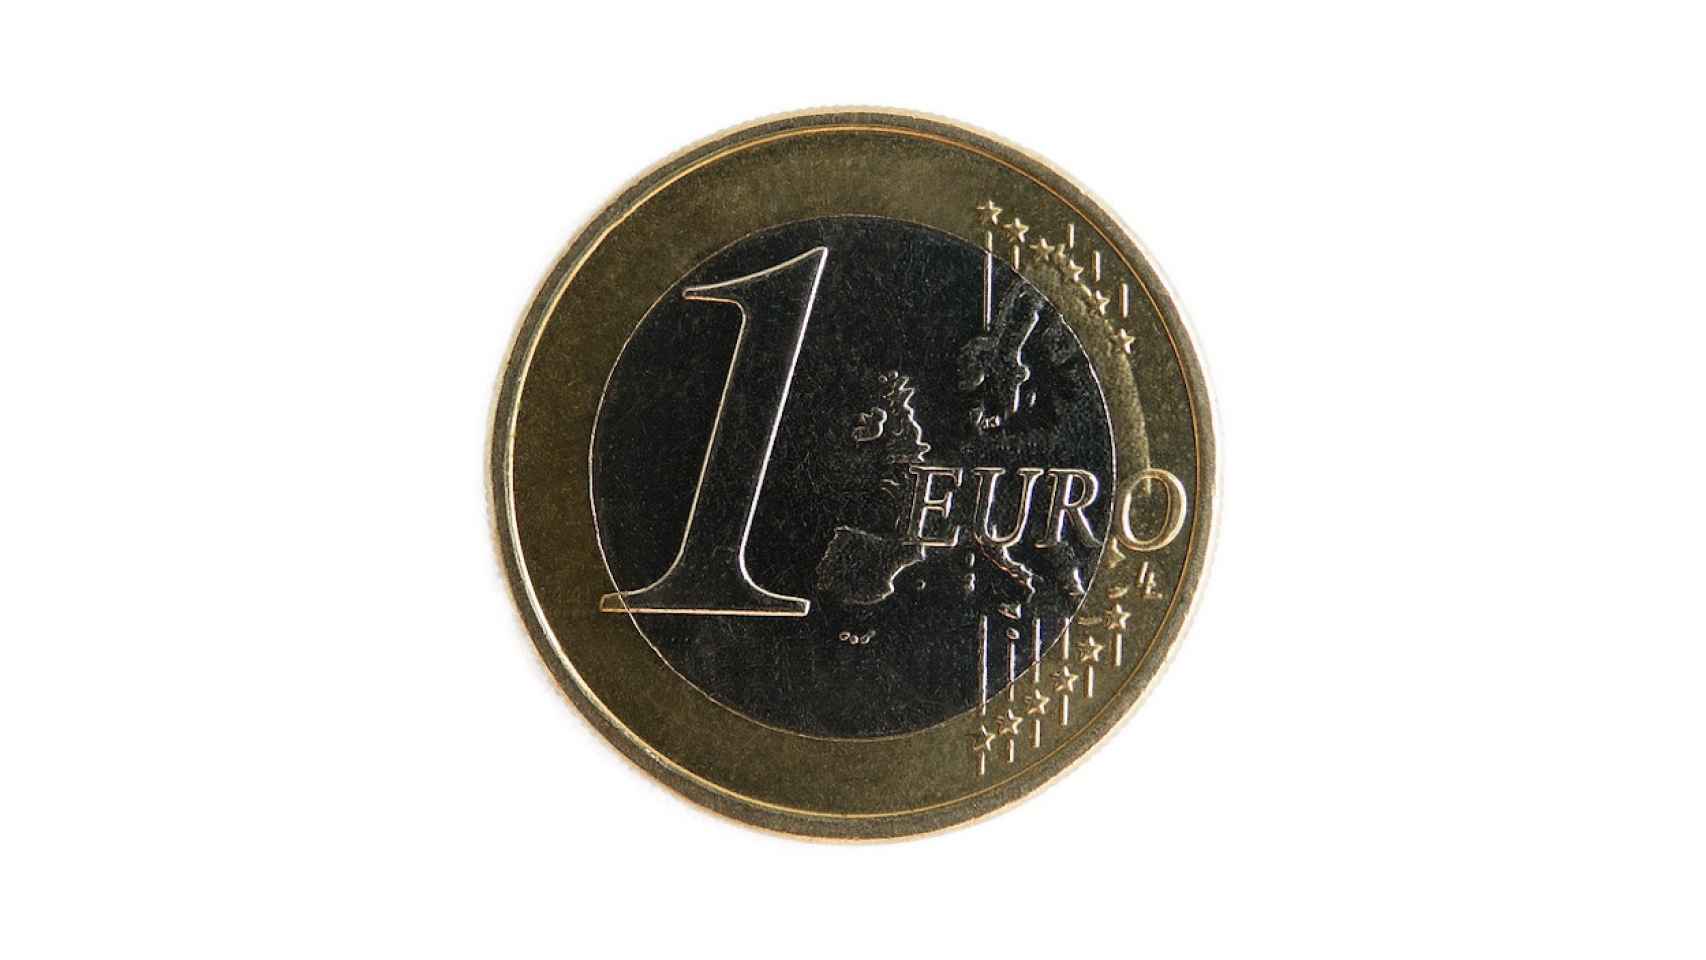 Fatti chiari e imparziali sulla deposito 4 euro casino senza tutto il clamore